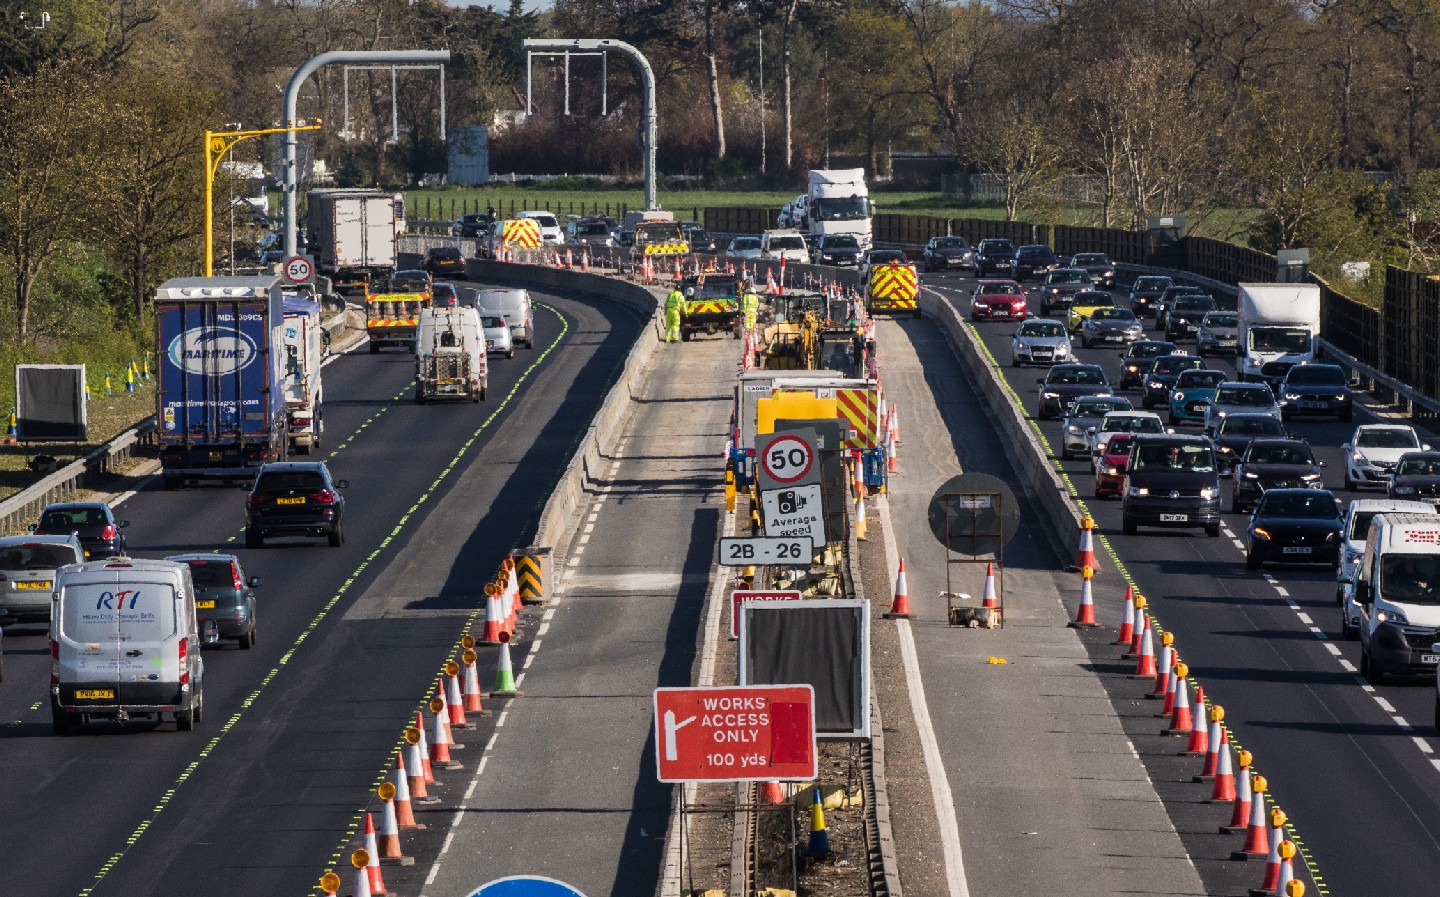 Smart motorway construction